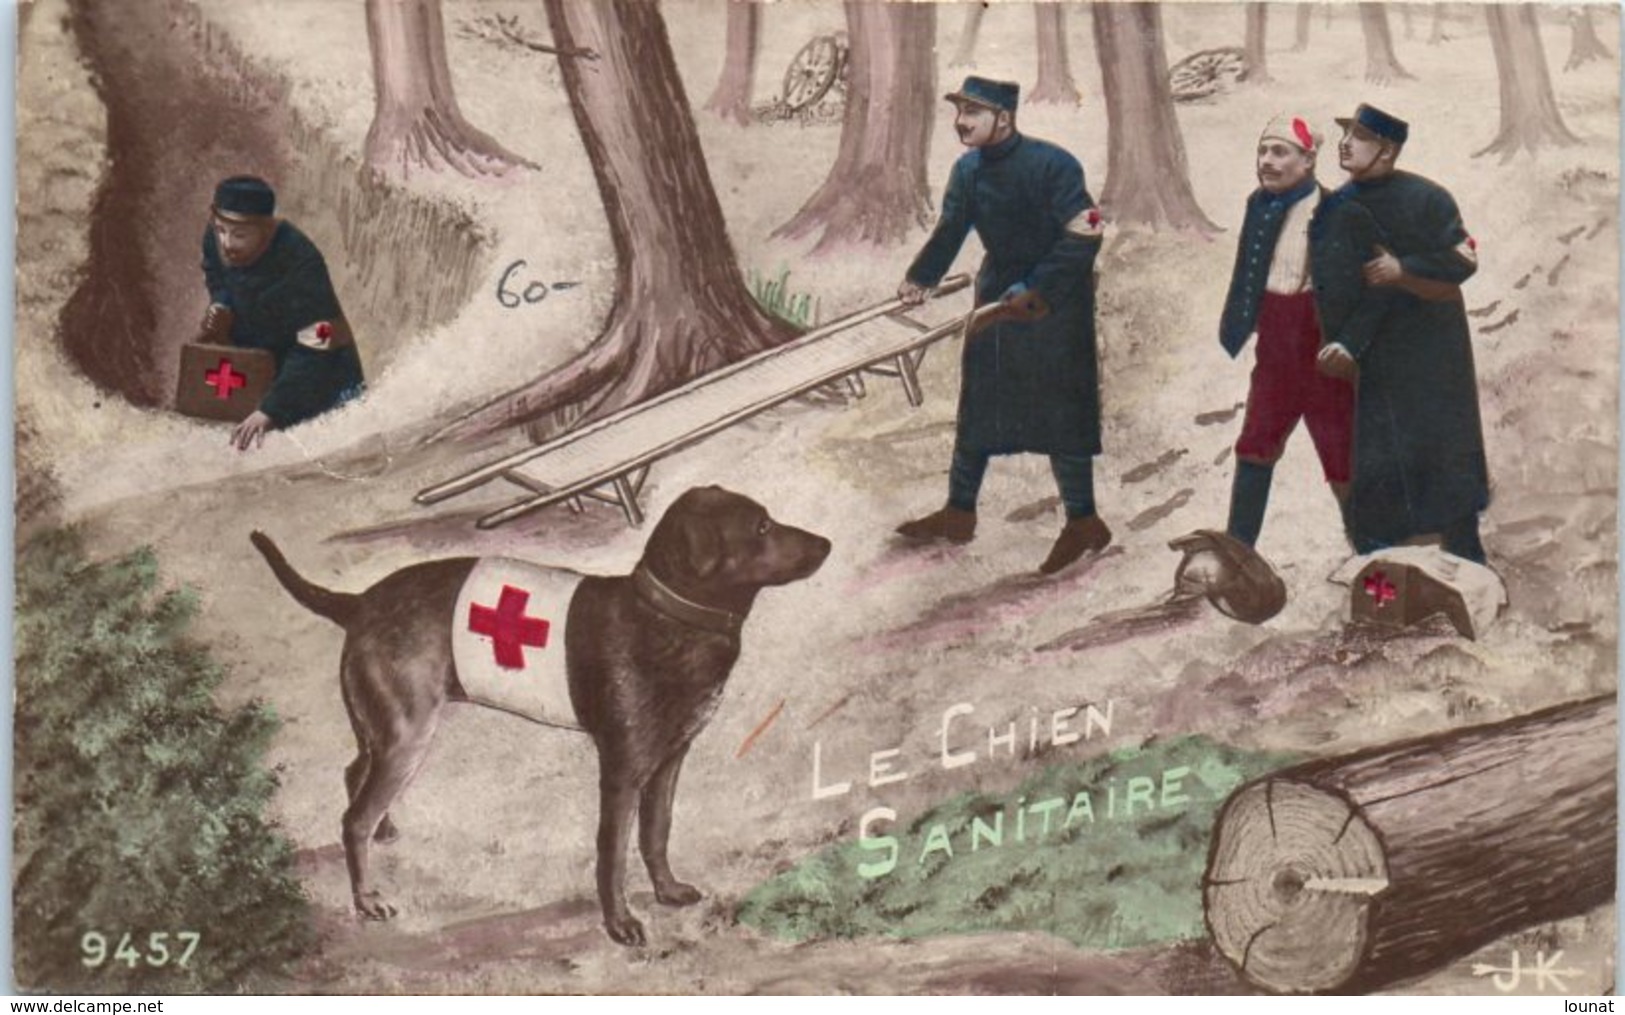 Croix Rouge - Le Chien Sanitaire - Red Cross